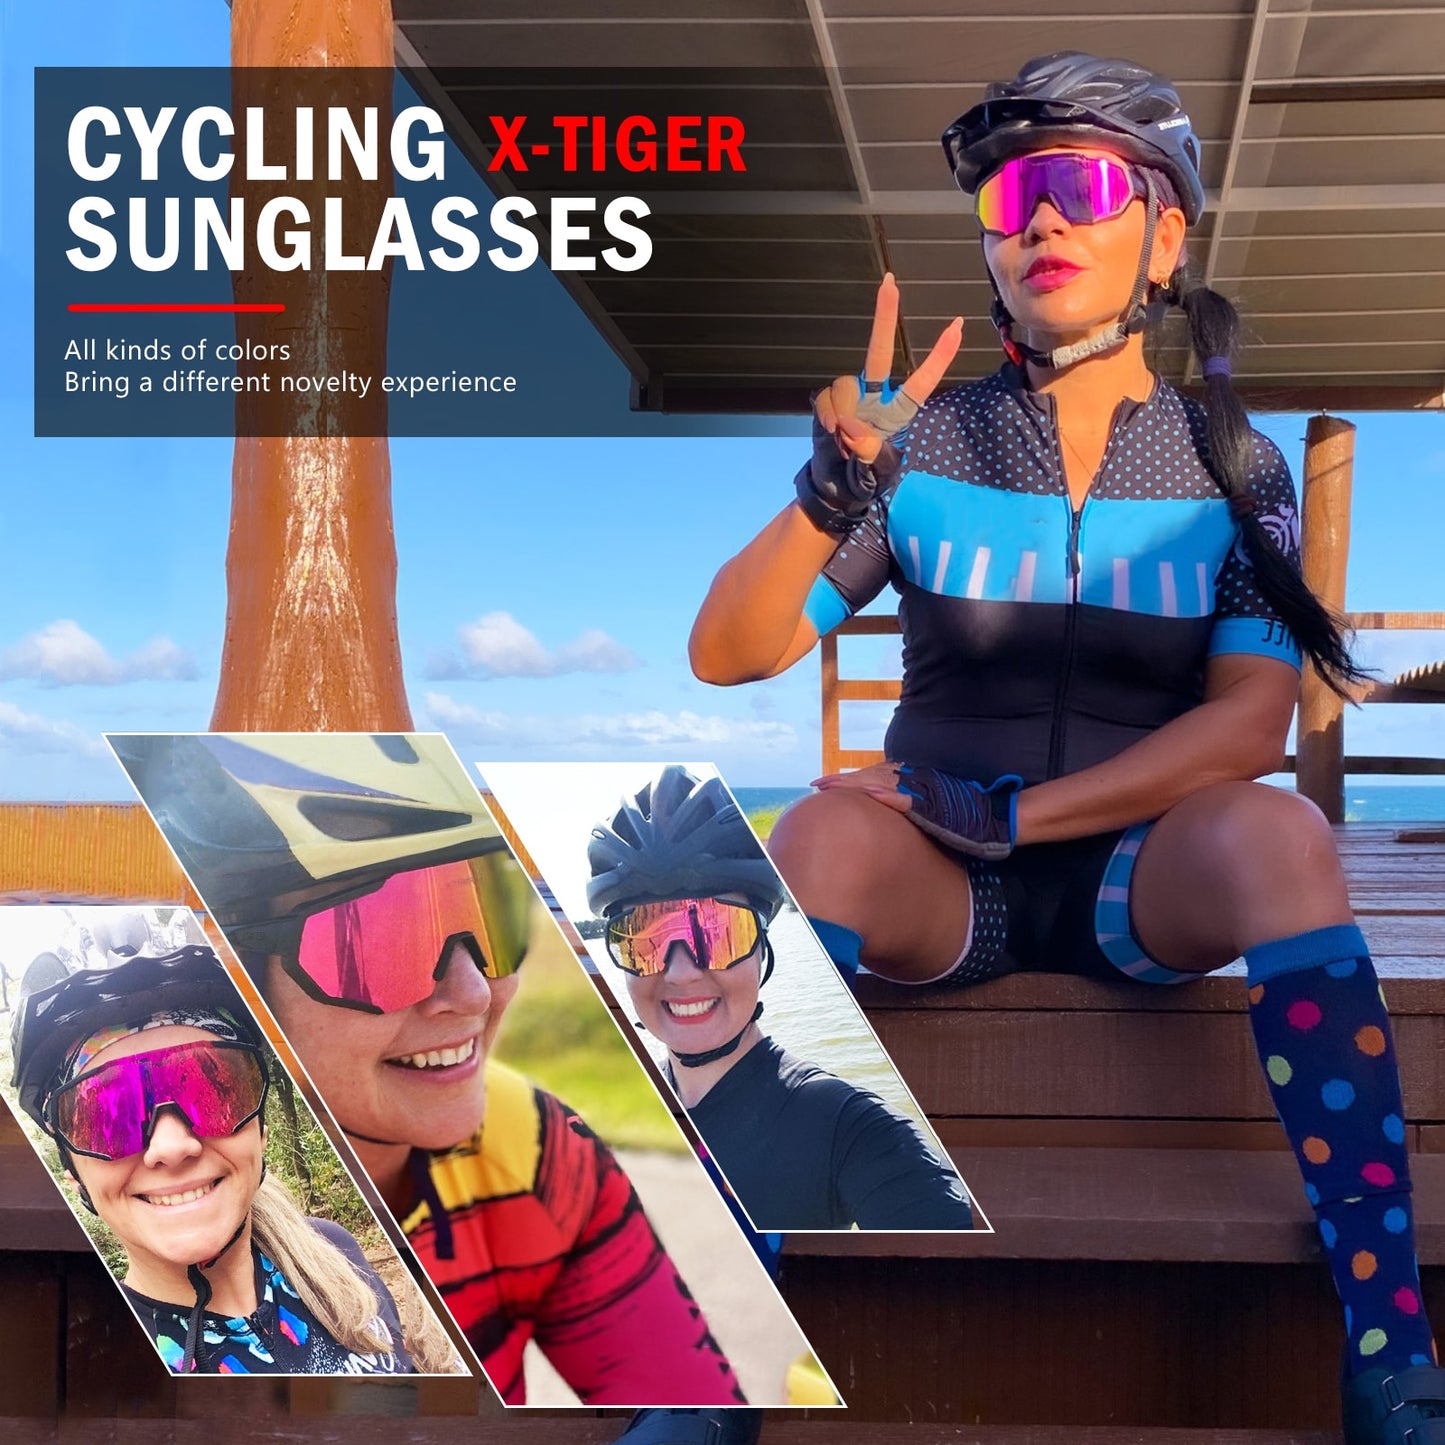 JPC Cycling Sunglasses 3 Lens - X-Tiger